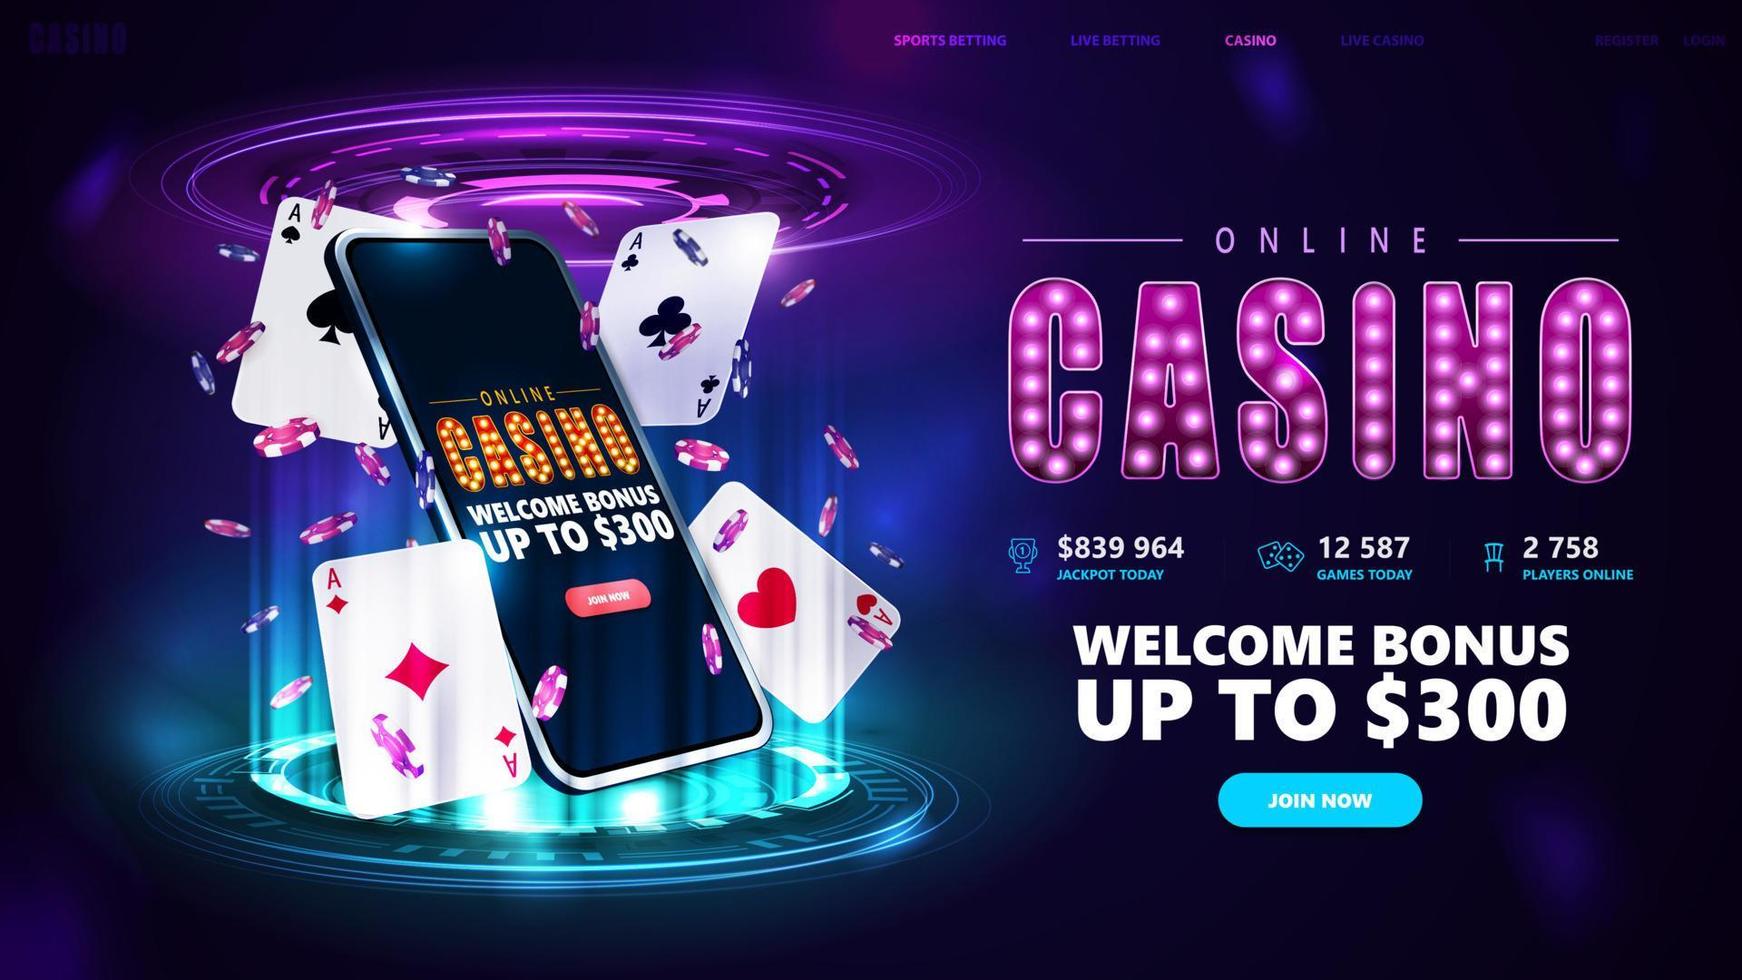 Online-Casino, Banner für Website mit Button, Smartphone, Pokerchips und Spielkarten auf blauem und rosafarbenem digitalem Podium mit digitalen Hologrammringen im dunklen Raum vektor